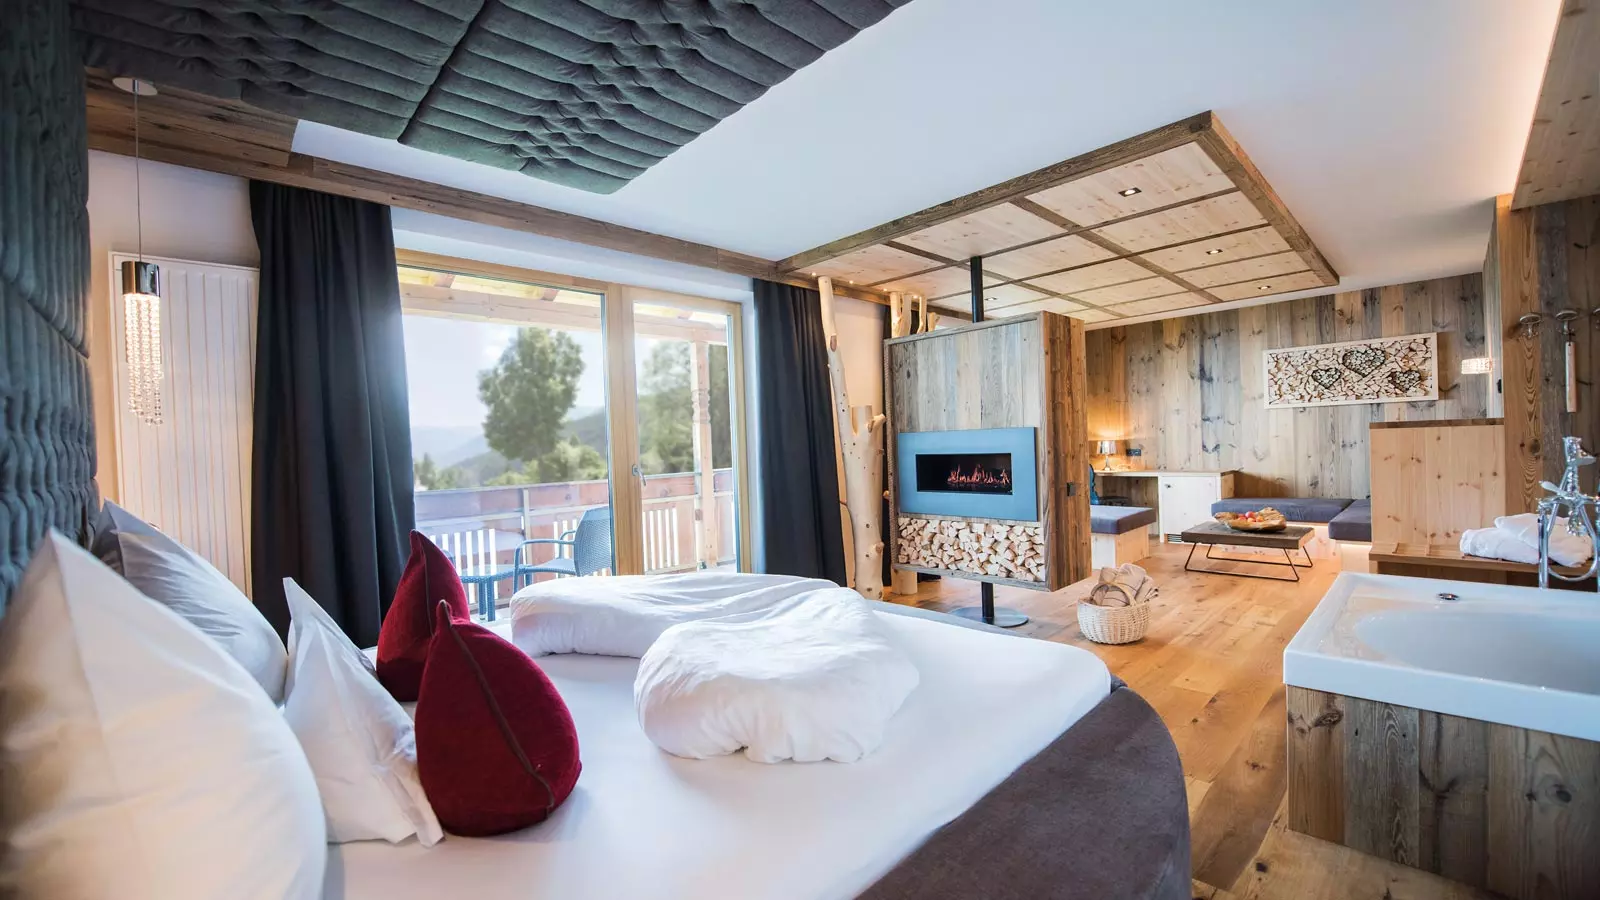 Romantiksuite des Parkhotel Holzerhof in Holz und Naturmaterialien eingerichtet und einem Queensize Bett